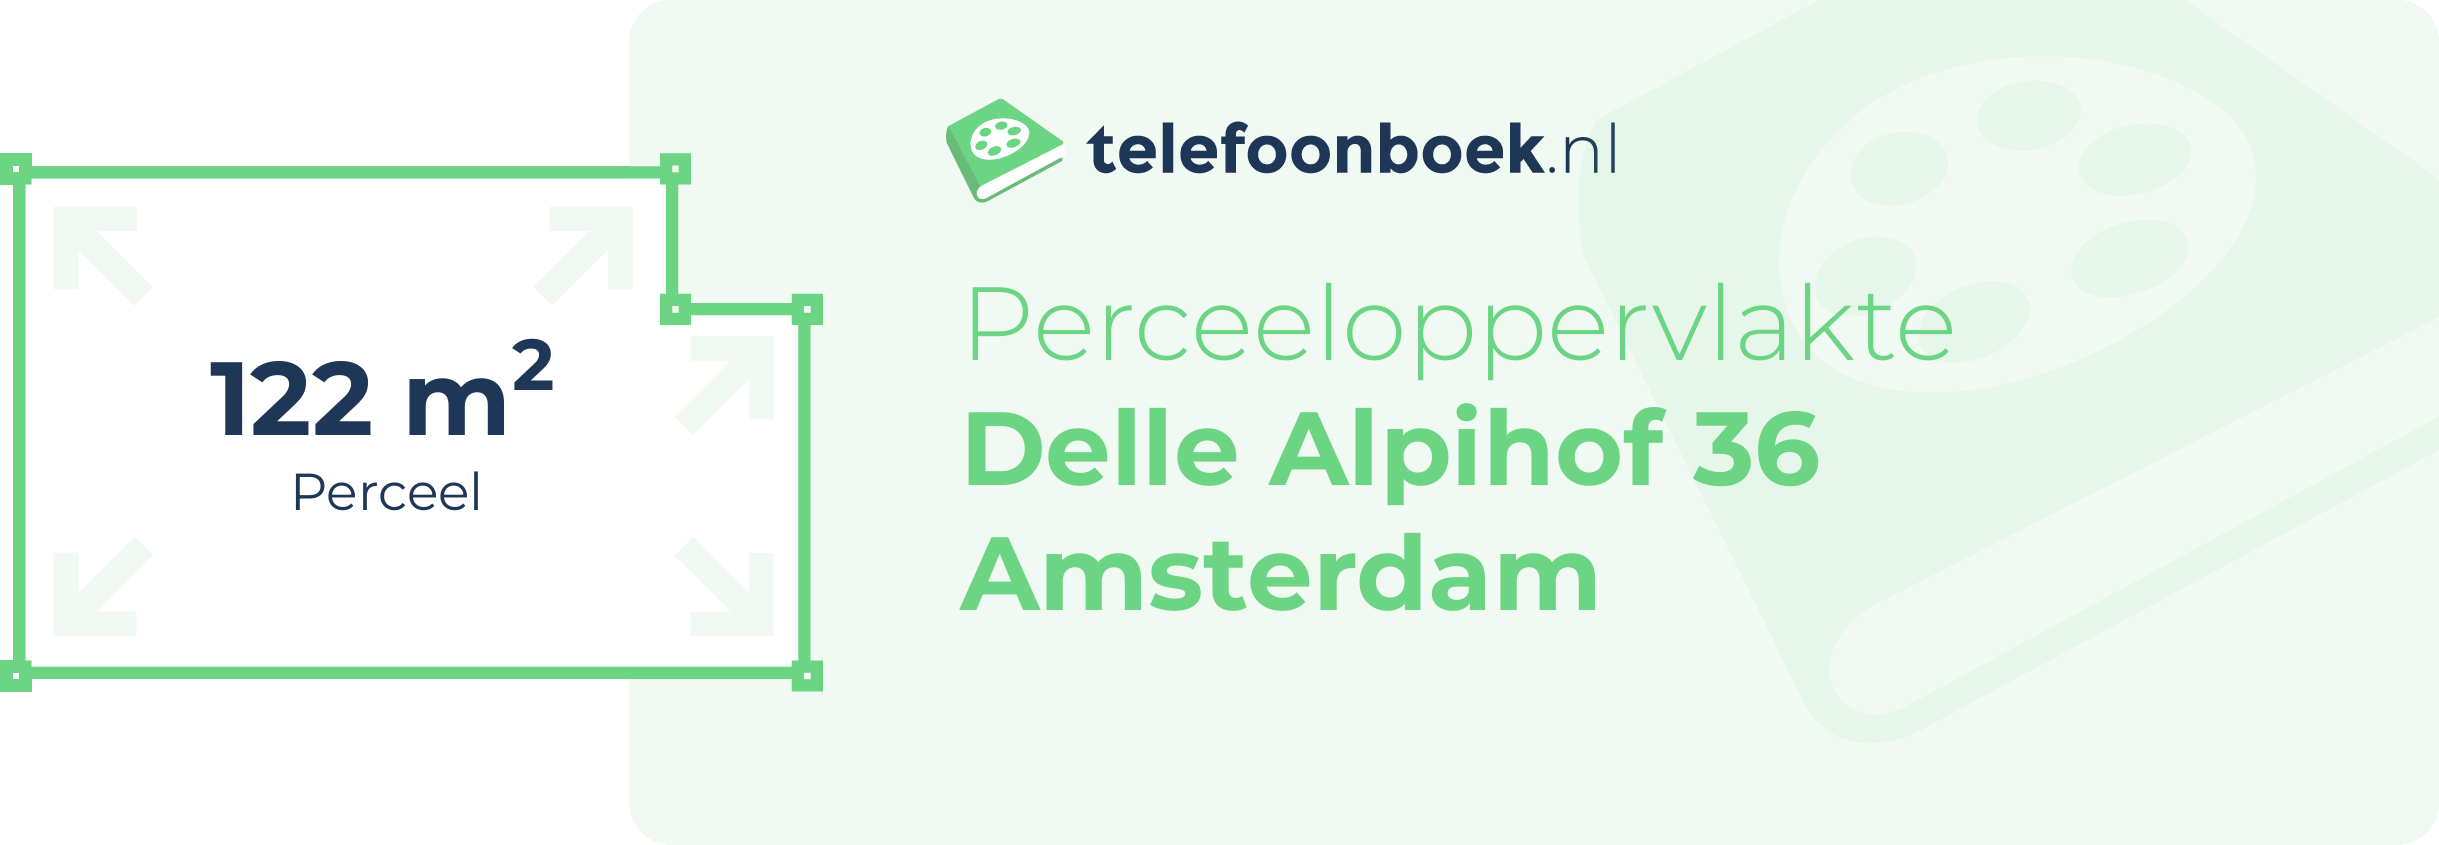 Perceeloppervlakte Delle Alpihof 36 Amsterdam